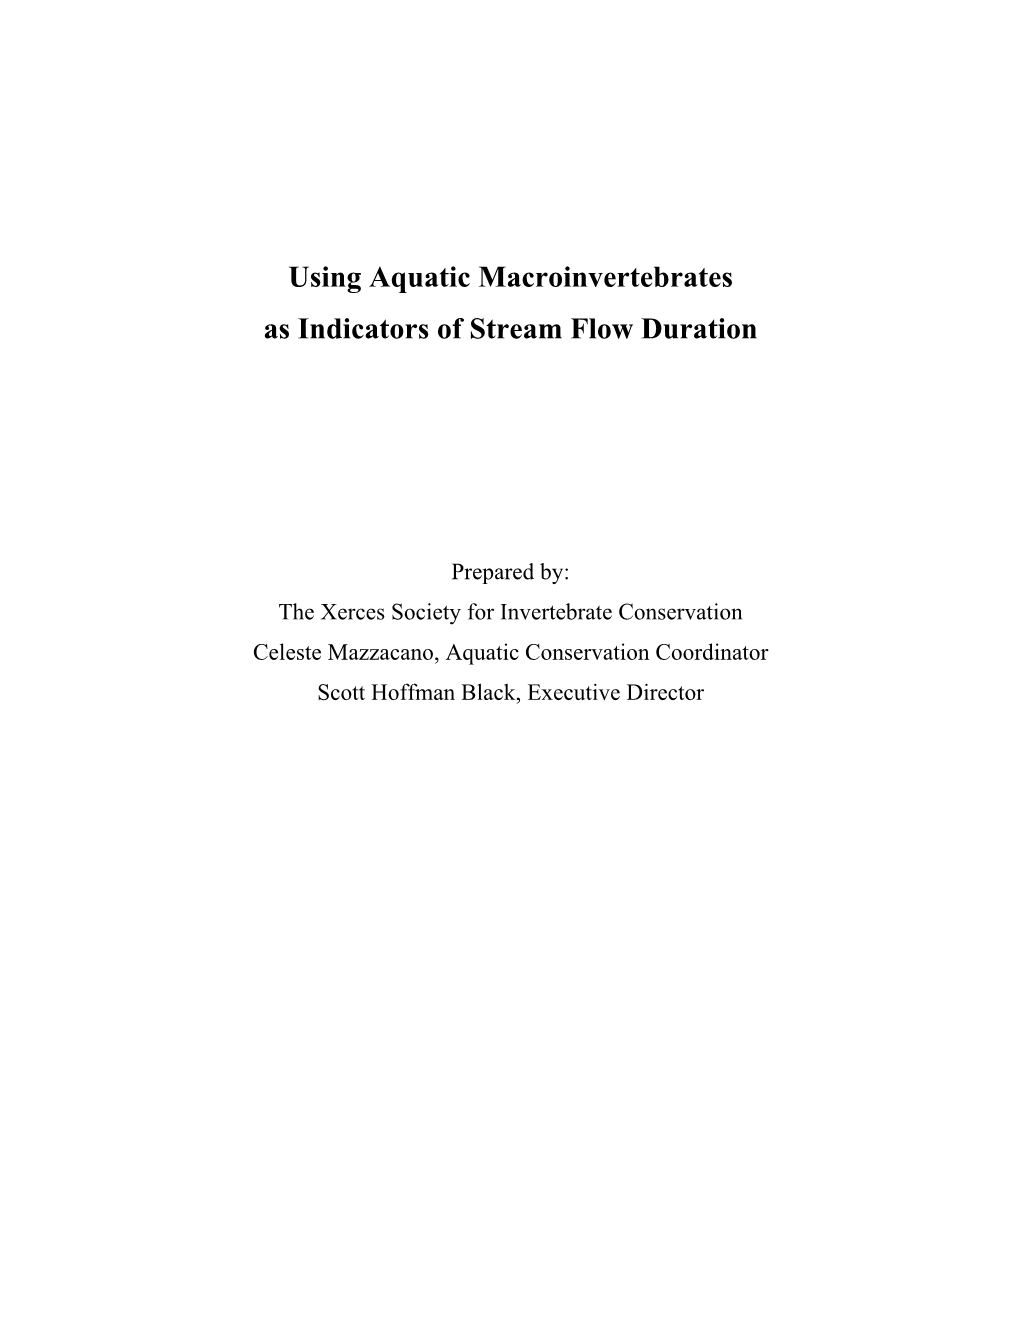 Using Aquatic Macroinvertebrates As Indicators of Stream Flow Duration